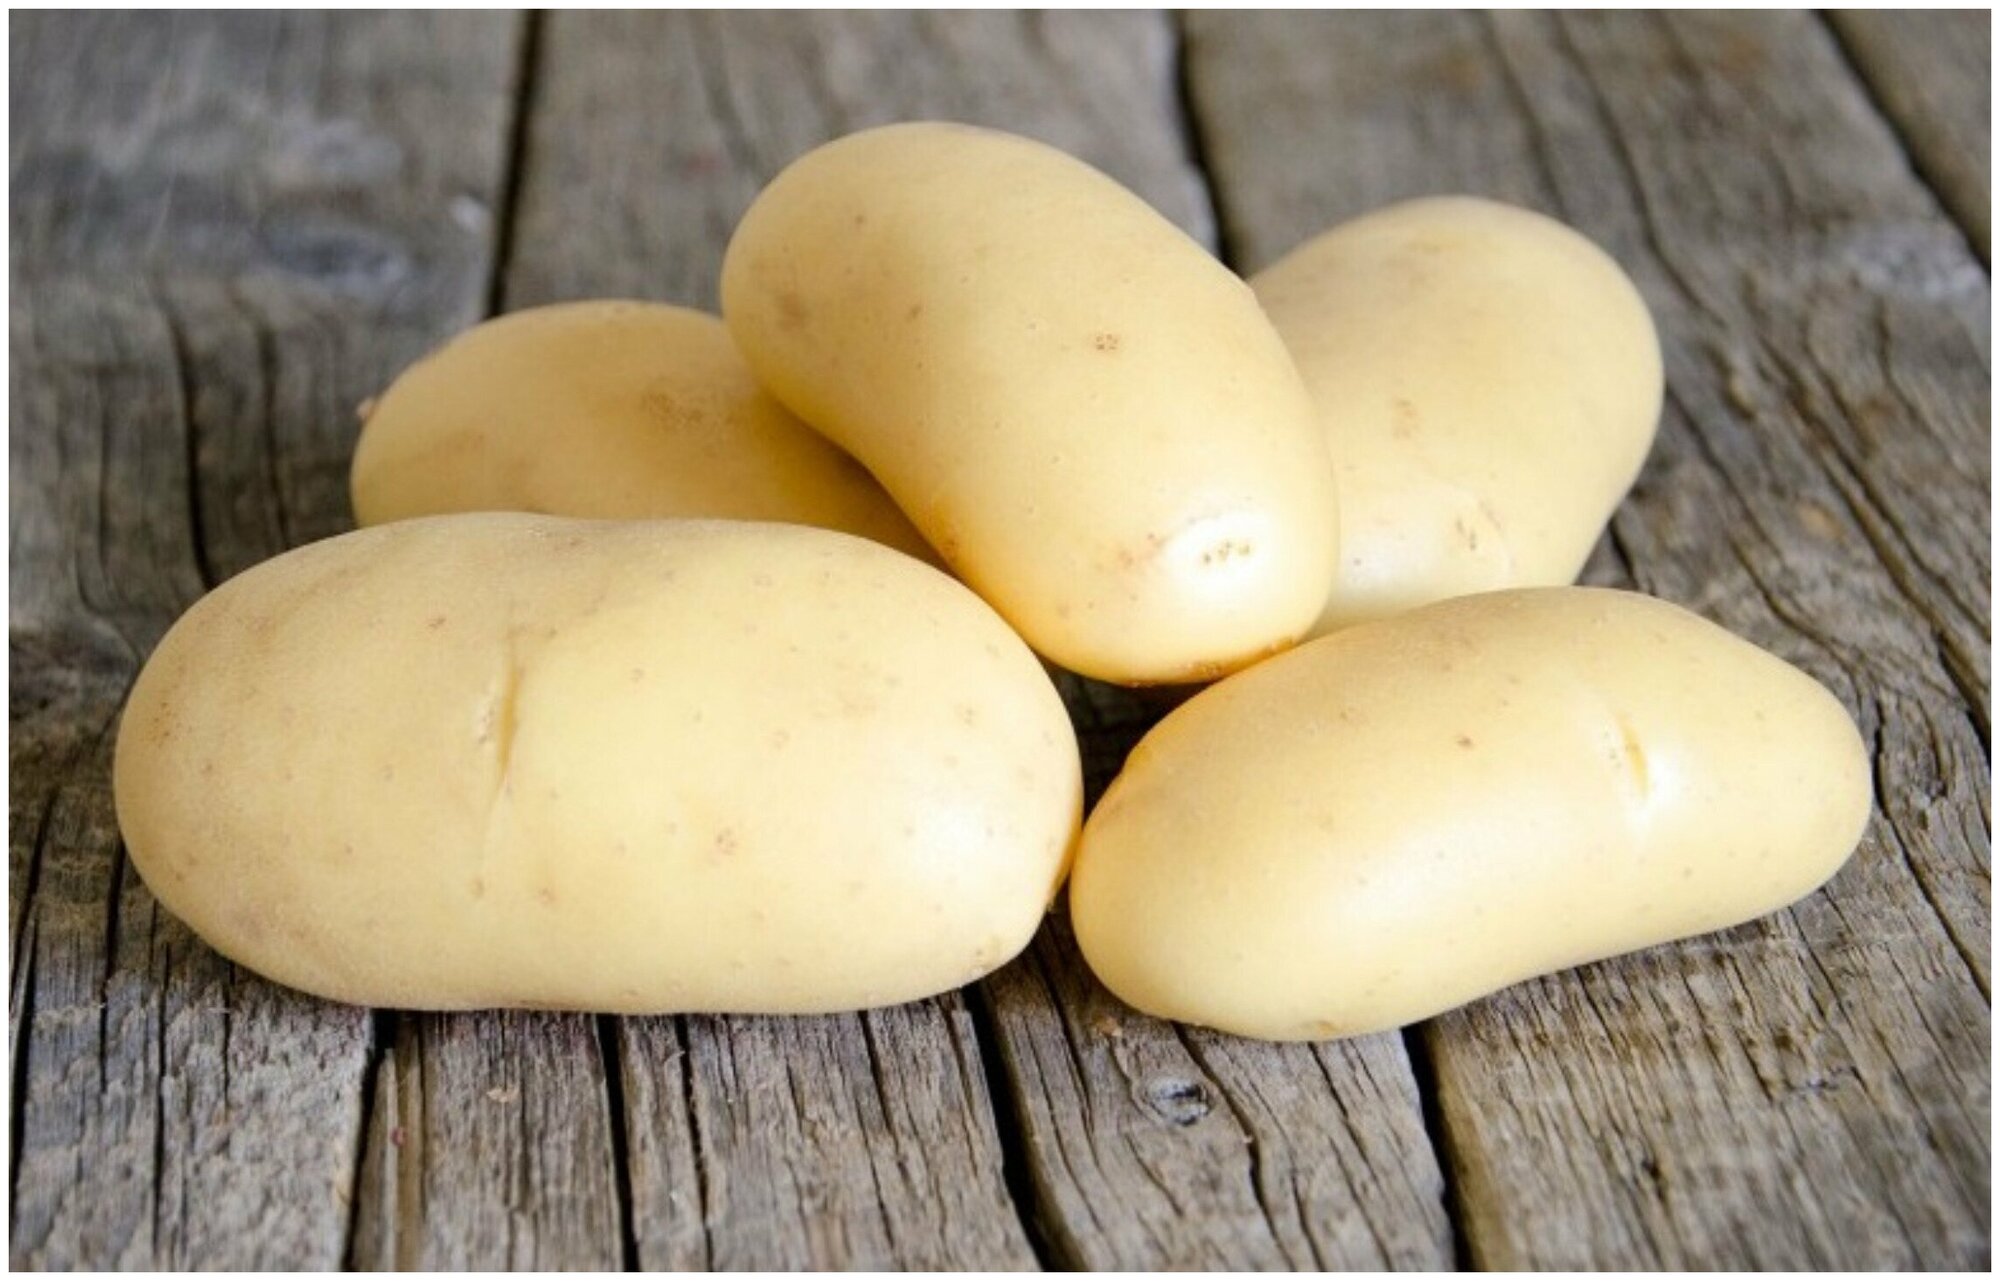 Картофель "Коломбо" 2 кг в сетке, высокоурожайный, с мелкими глазками, срок созревания 70-80 дней, идеально подходит для механического способа сборки